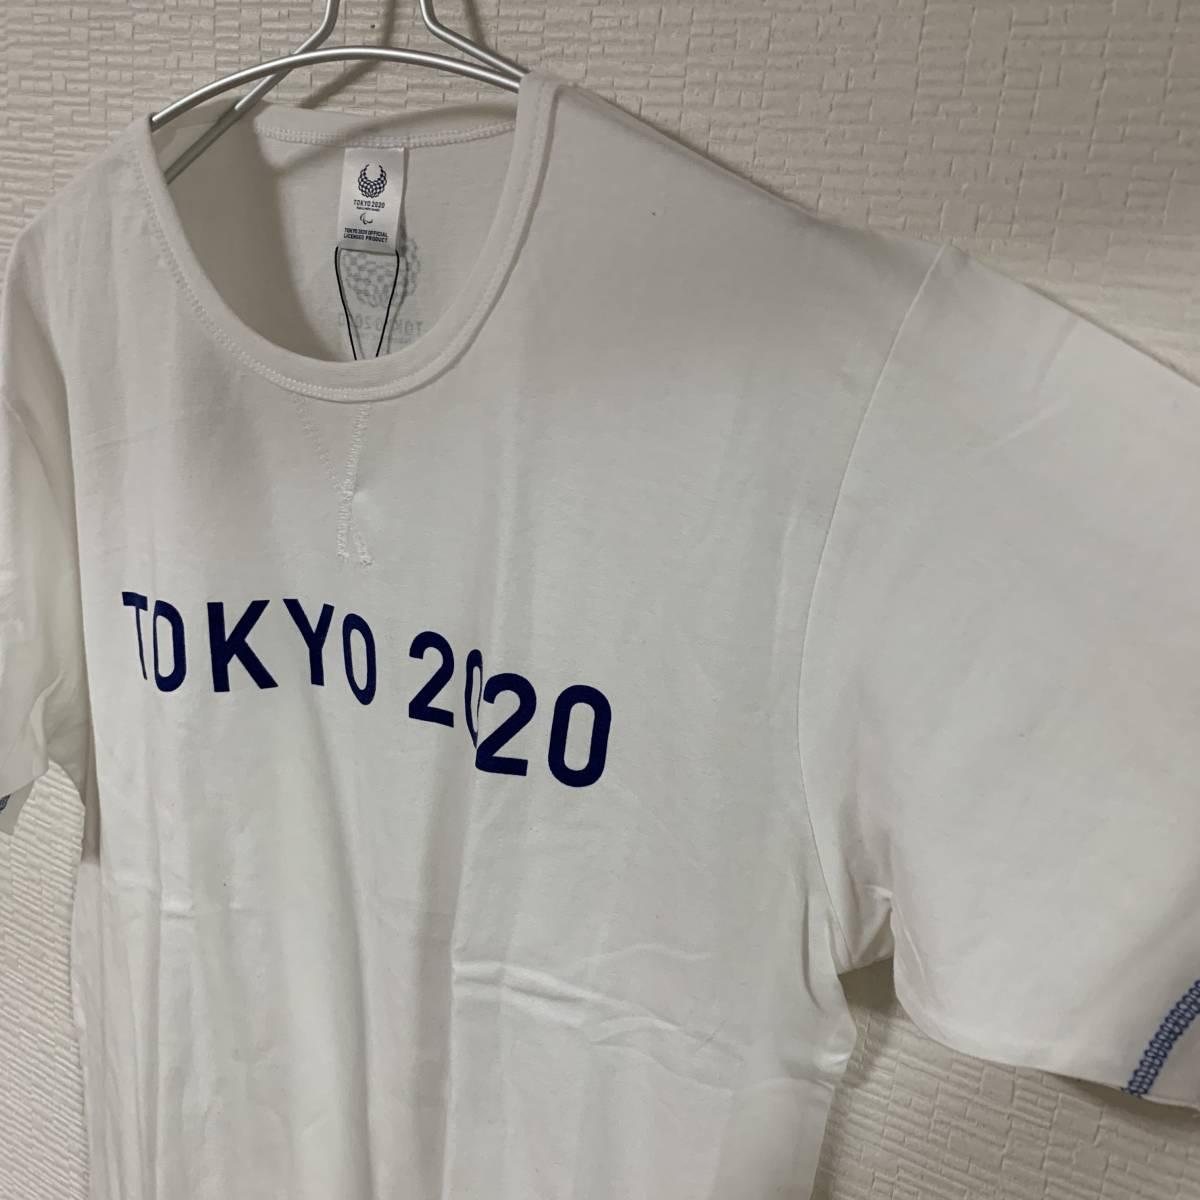 東京2020 東京オリンピック パラリンピック - TOKYP2020 公式ロゴTシャツ LLサイズ 公式ライセンス商品 販売終了 (タグ付き新品未着用)_画像2